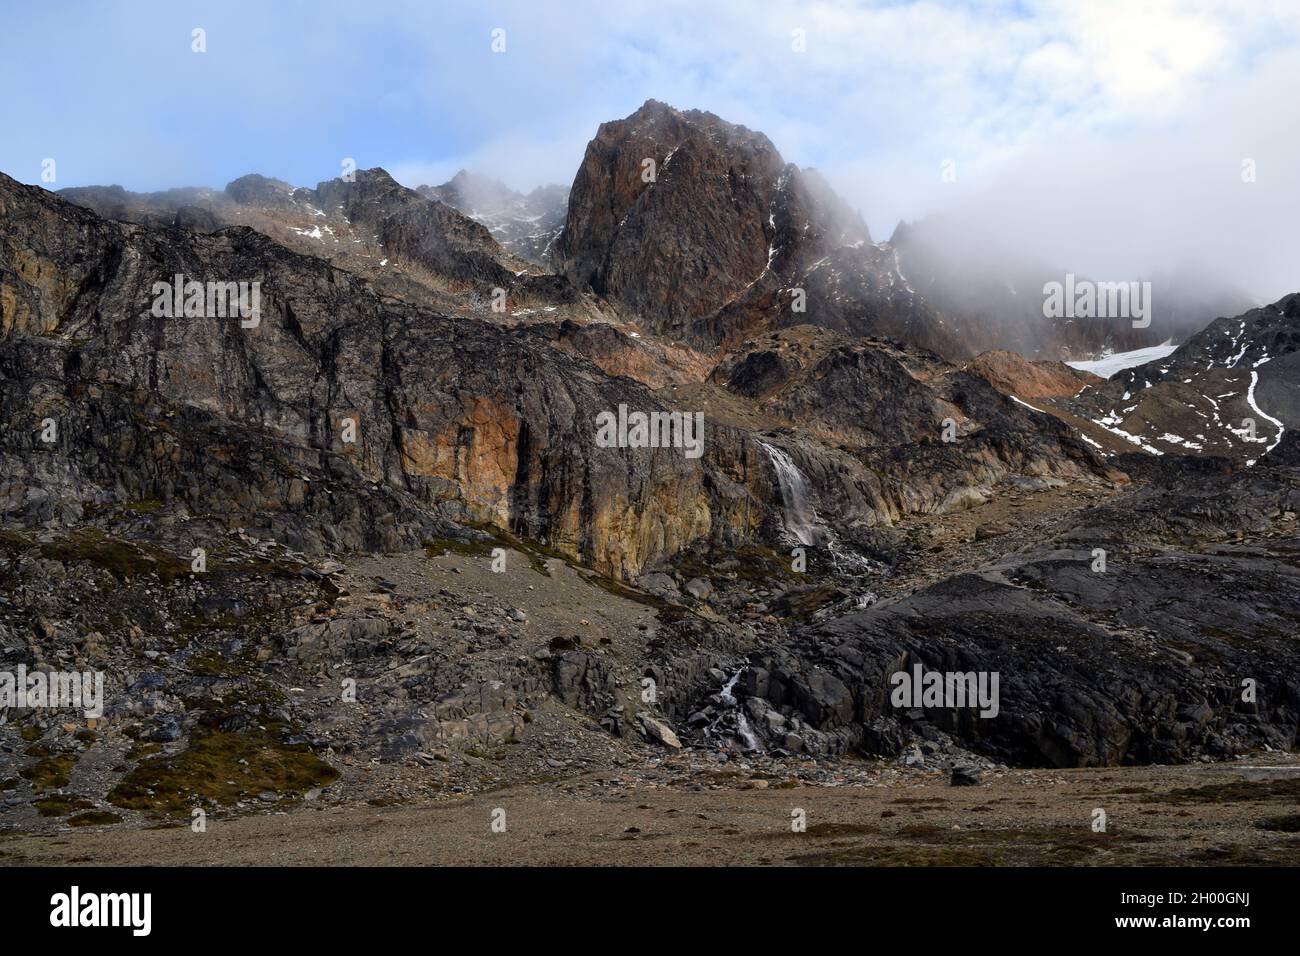 Anden bei Ushuaia, Argentinien, der südlichsten Spitze Südamerikas. Felsen voller Farben und Formen. Stockfoto